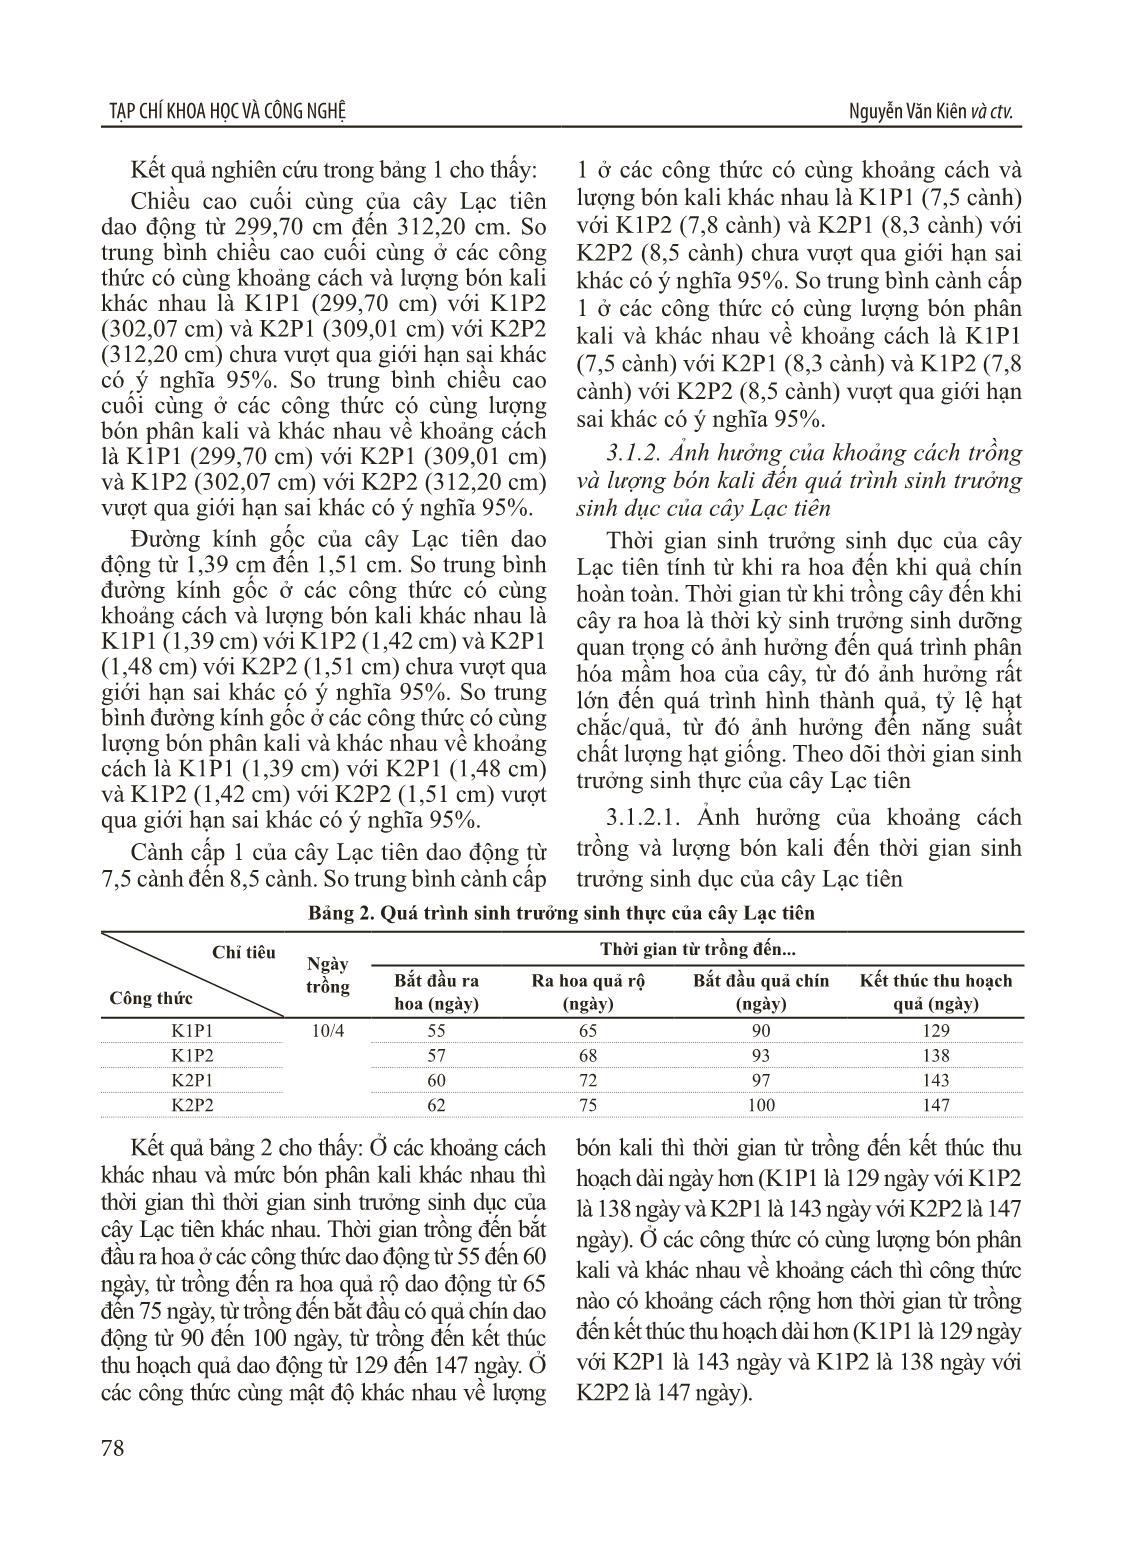 Nghiên cứu xây dựng quy trình sản xuất hạt giống lạc tiên (Passiflora foetida L.) tại Thanh Hóa trang 3